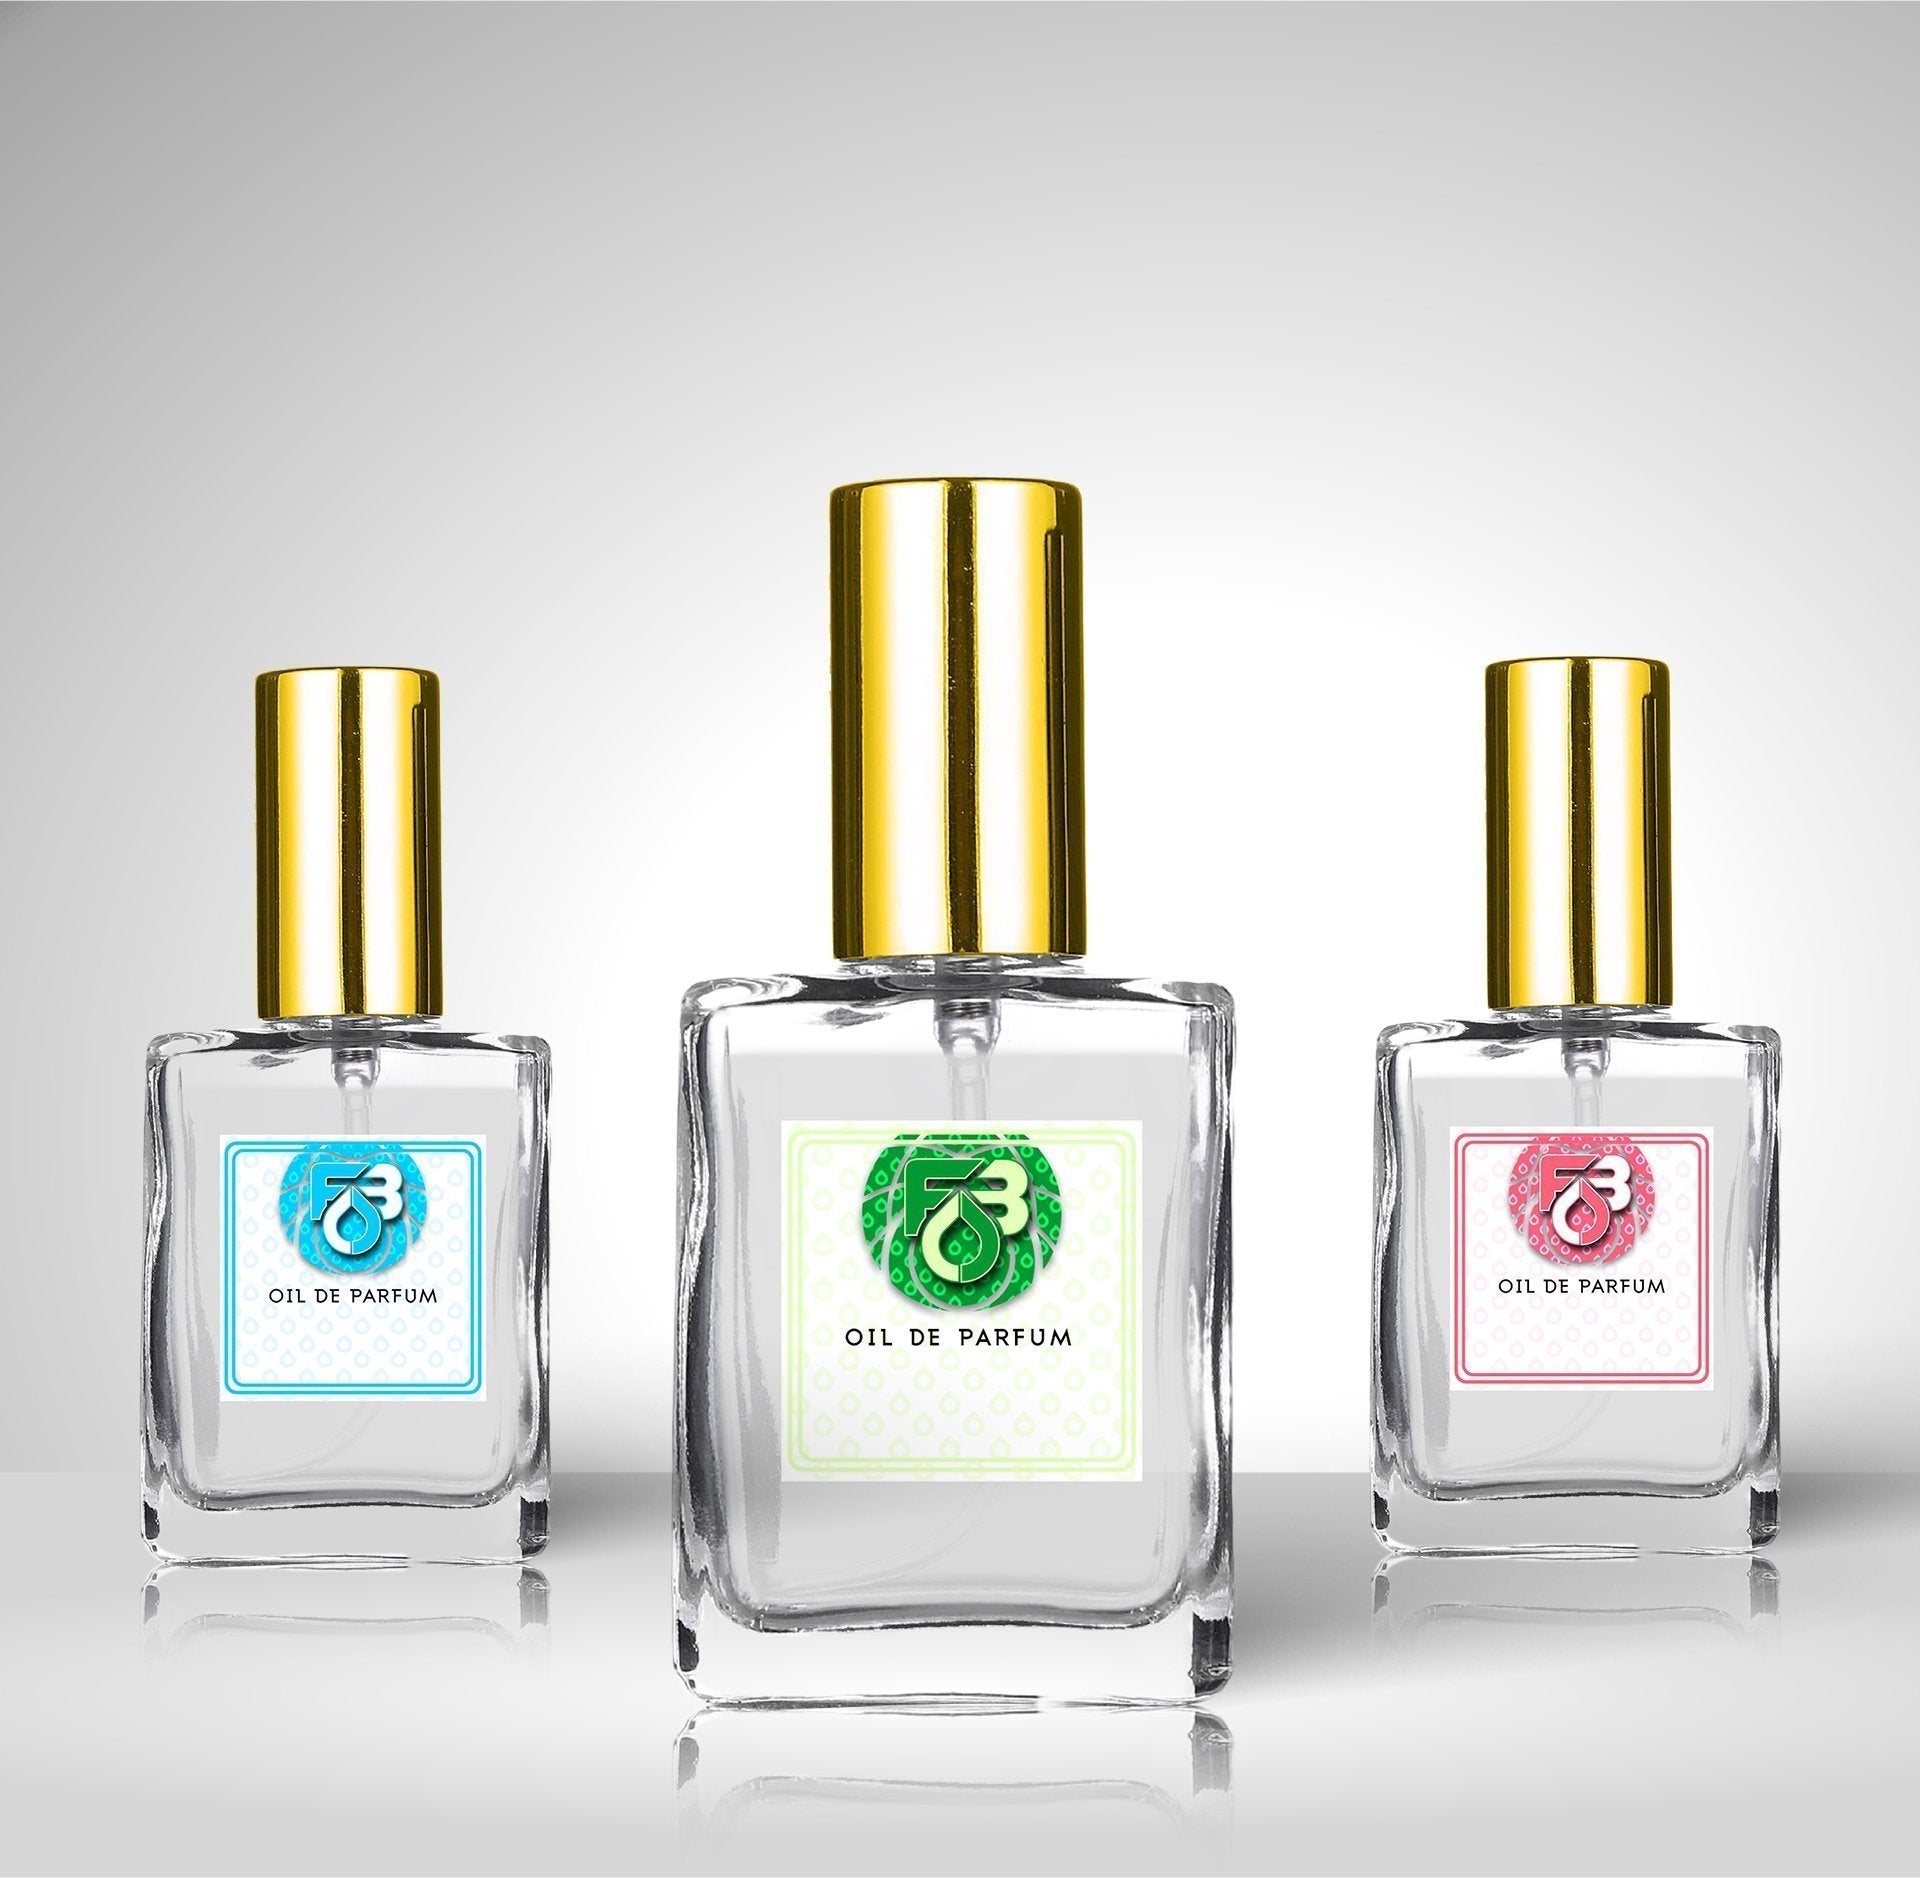 Compare Aroma to Dubai Jade®